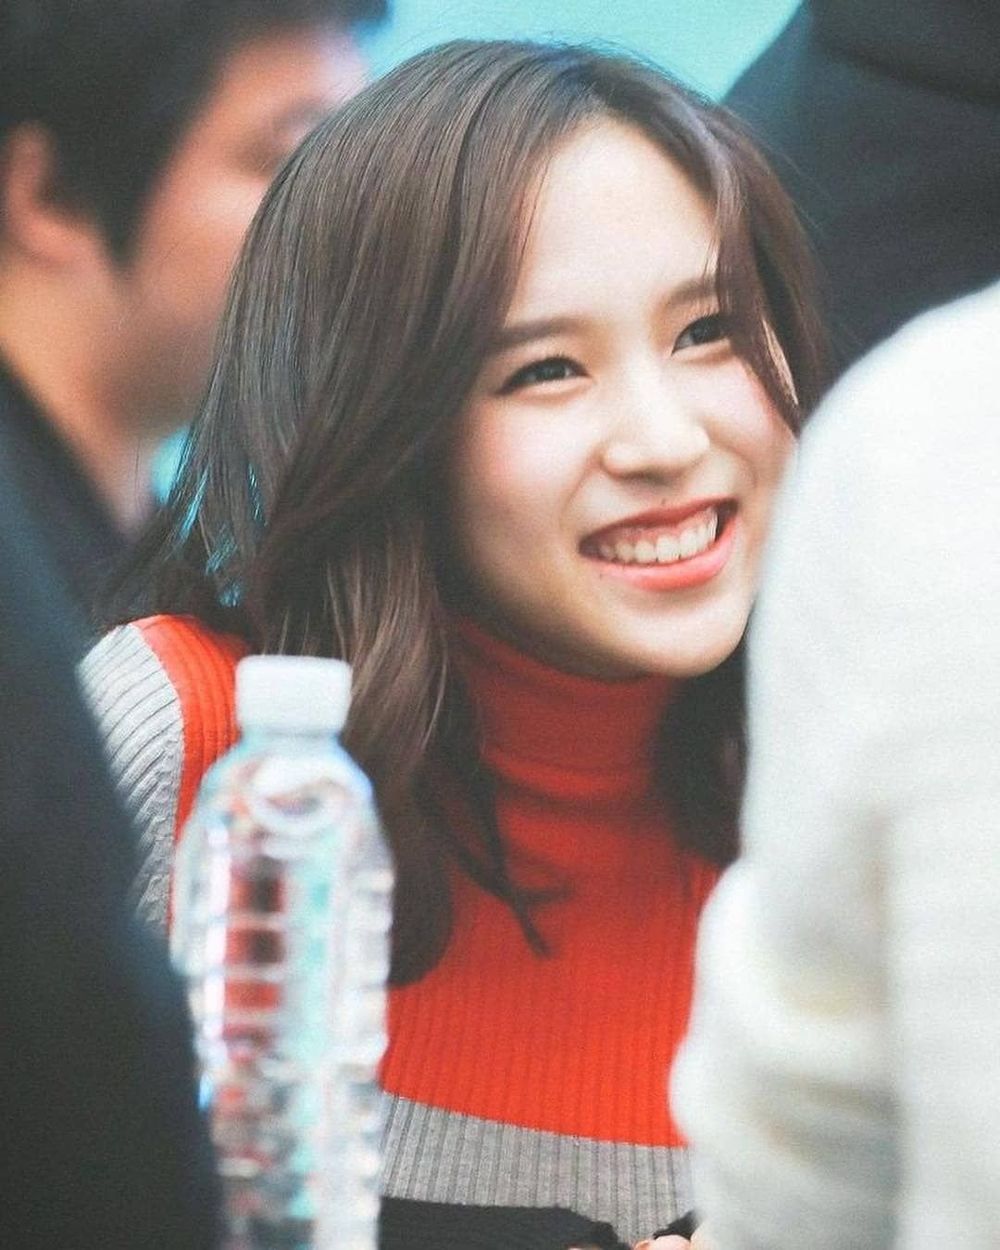  
Mina có nụ cười hở lợi khá đặc trưng. (Ảnh: Chụp màn hình)